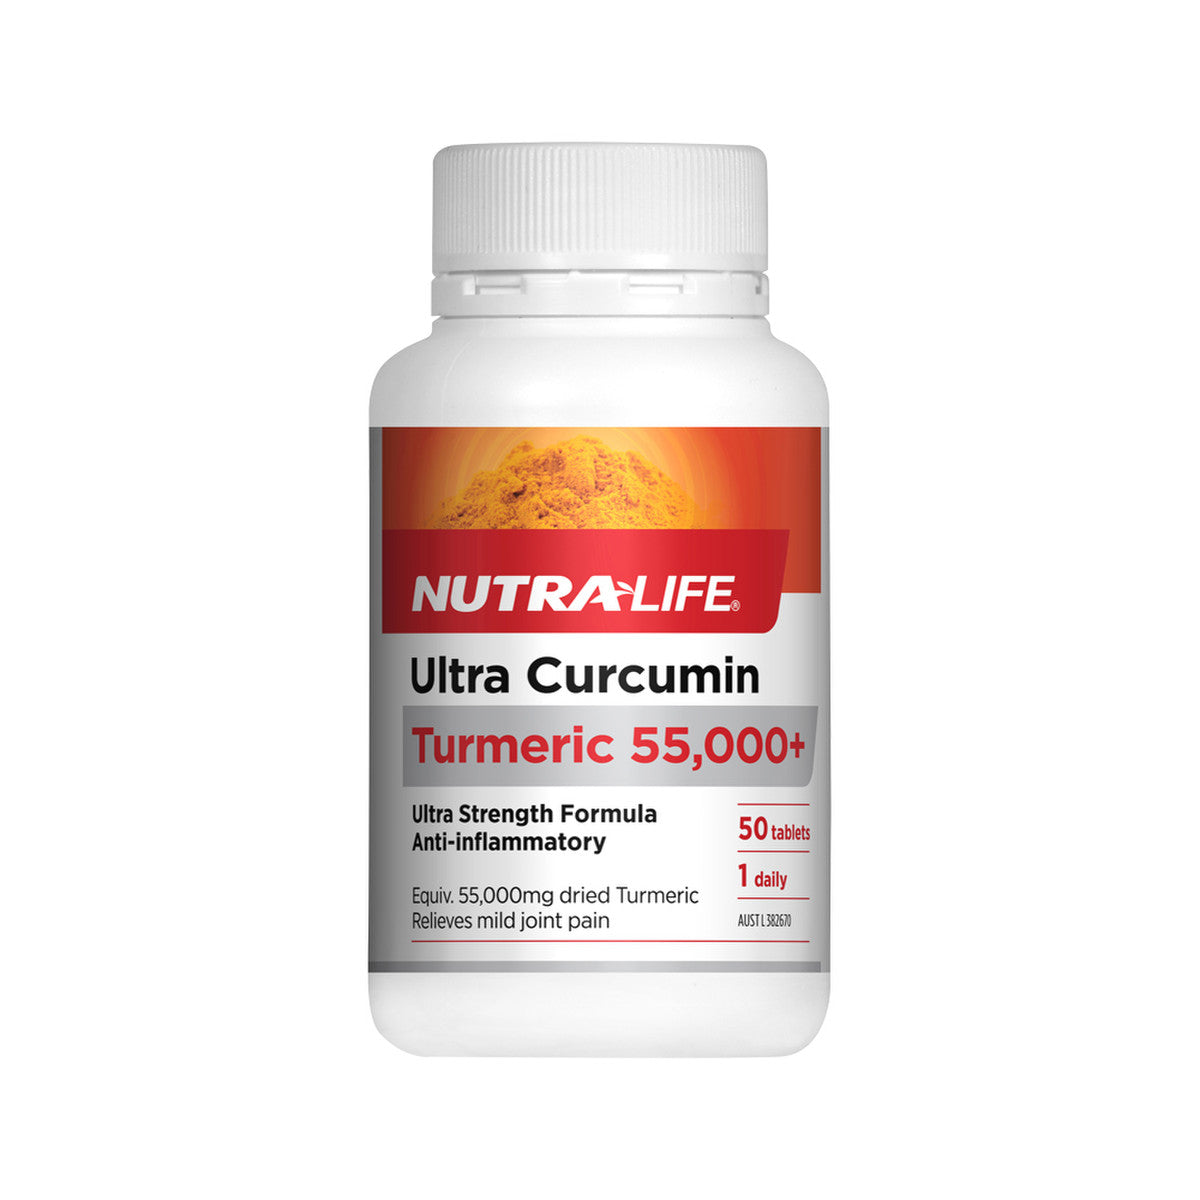 NutraLife - Ultra Curcumin Turmeric 55,000+